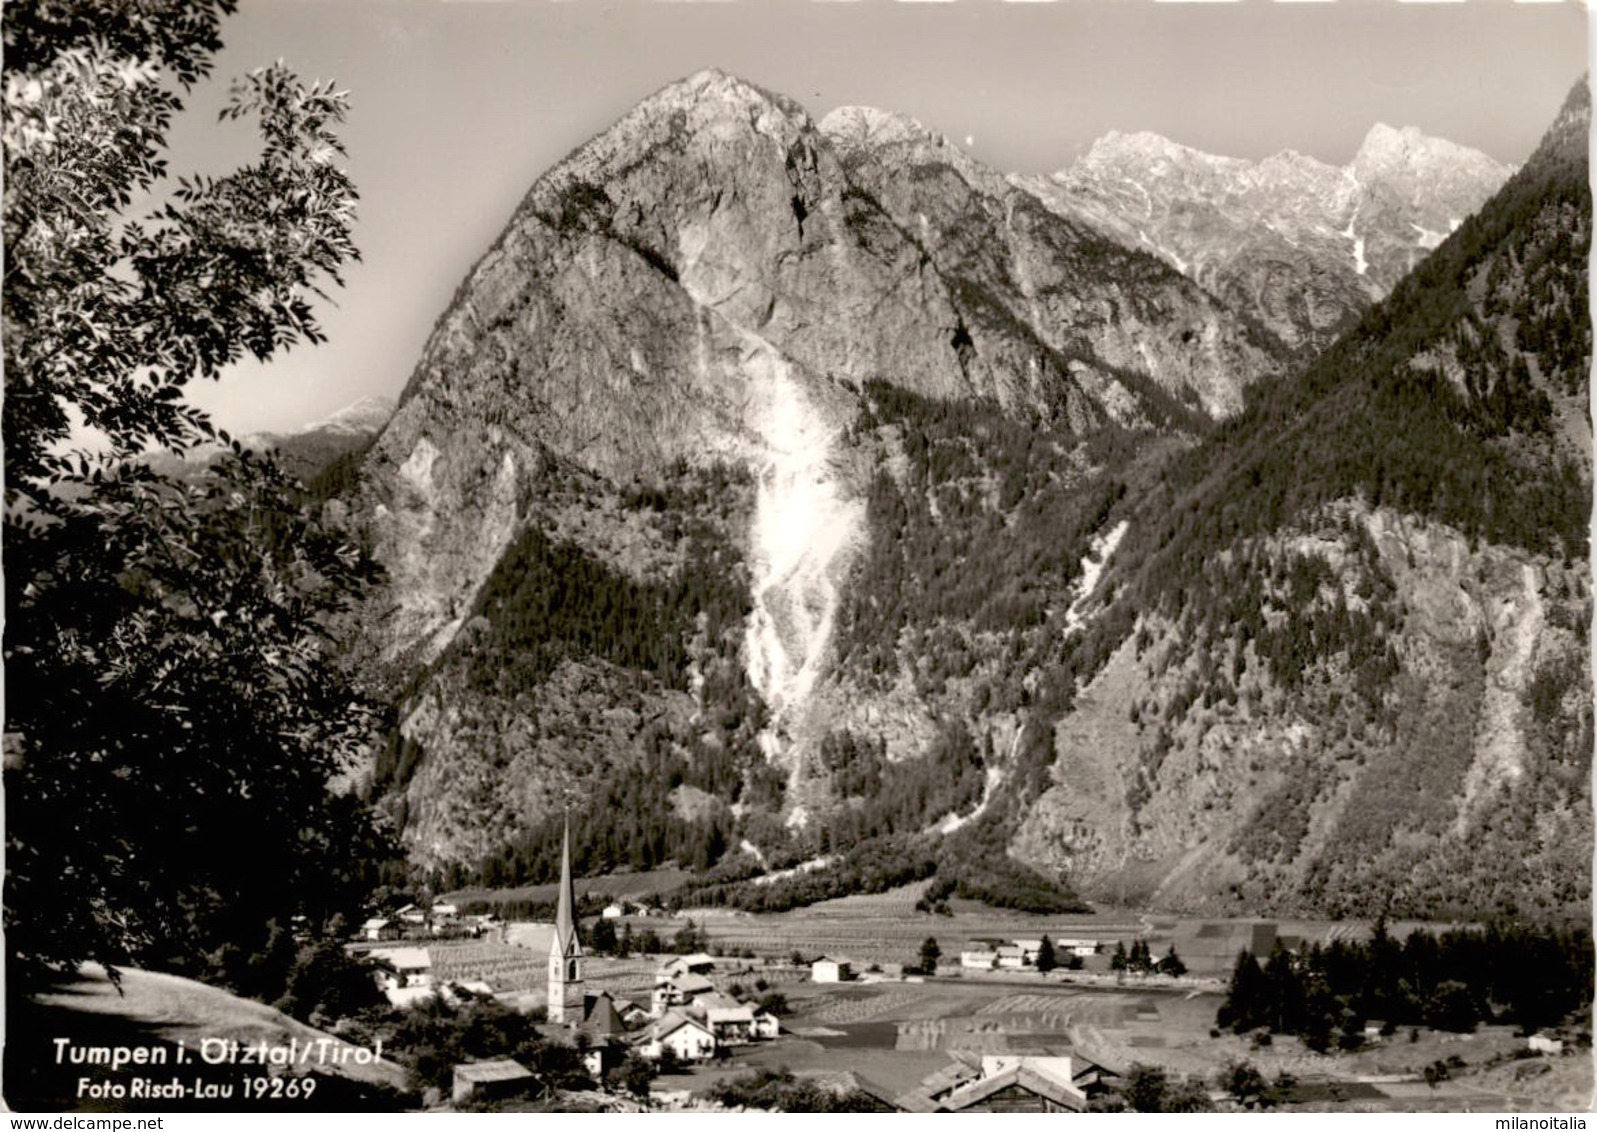 Tumpen I. Ötztal, Tirol (19269) - Umhausen